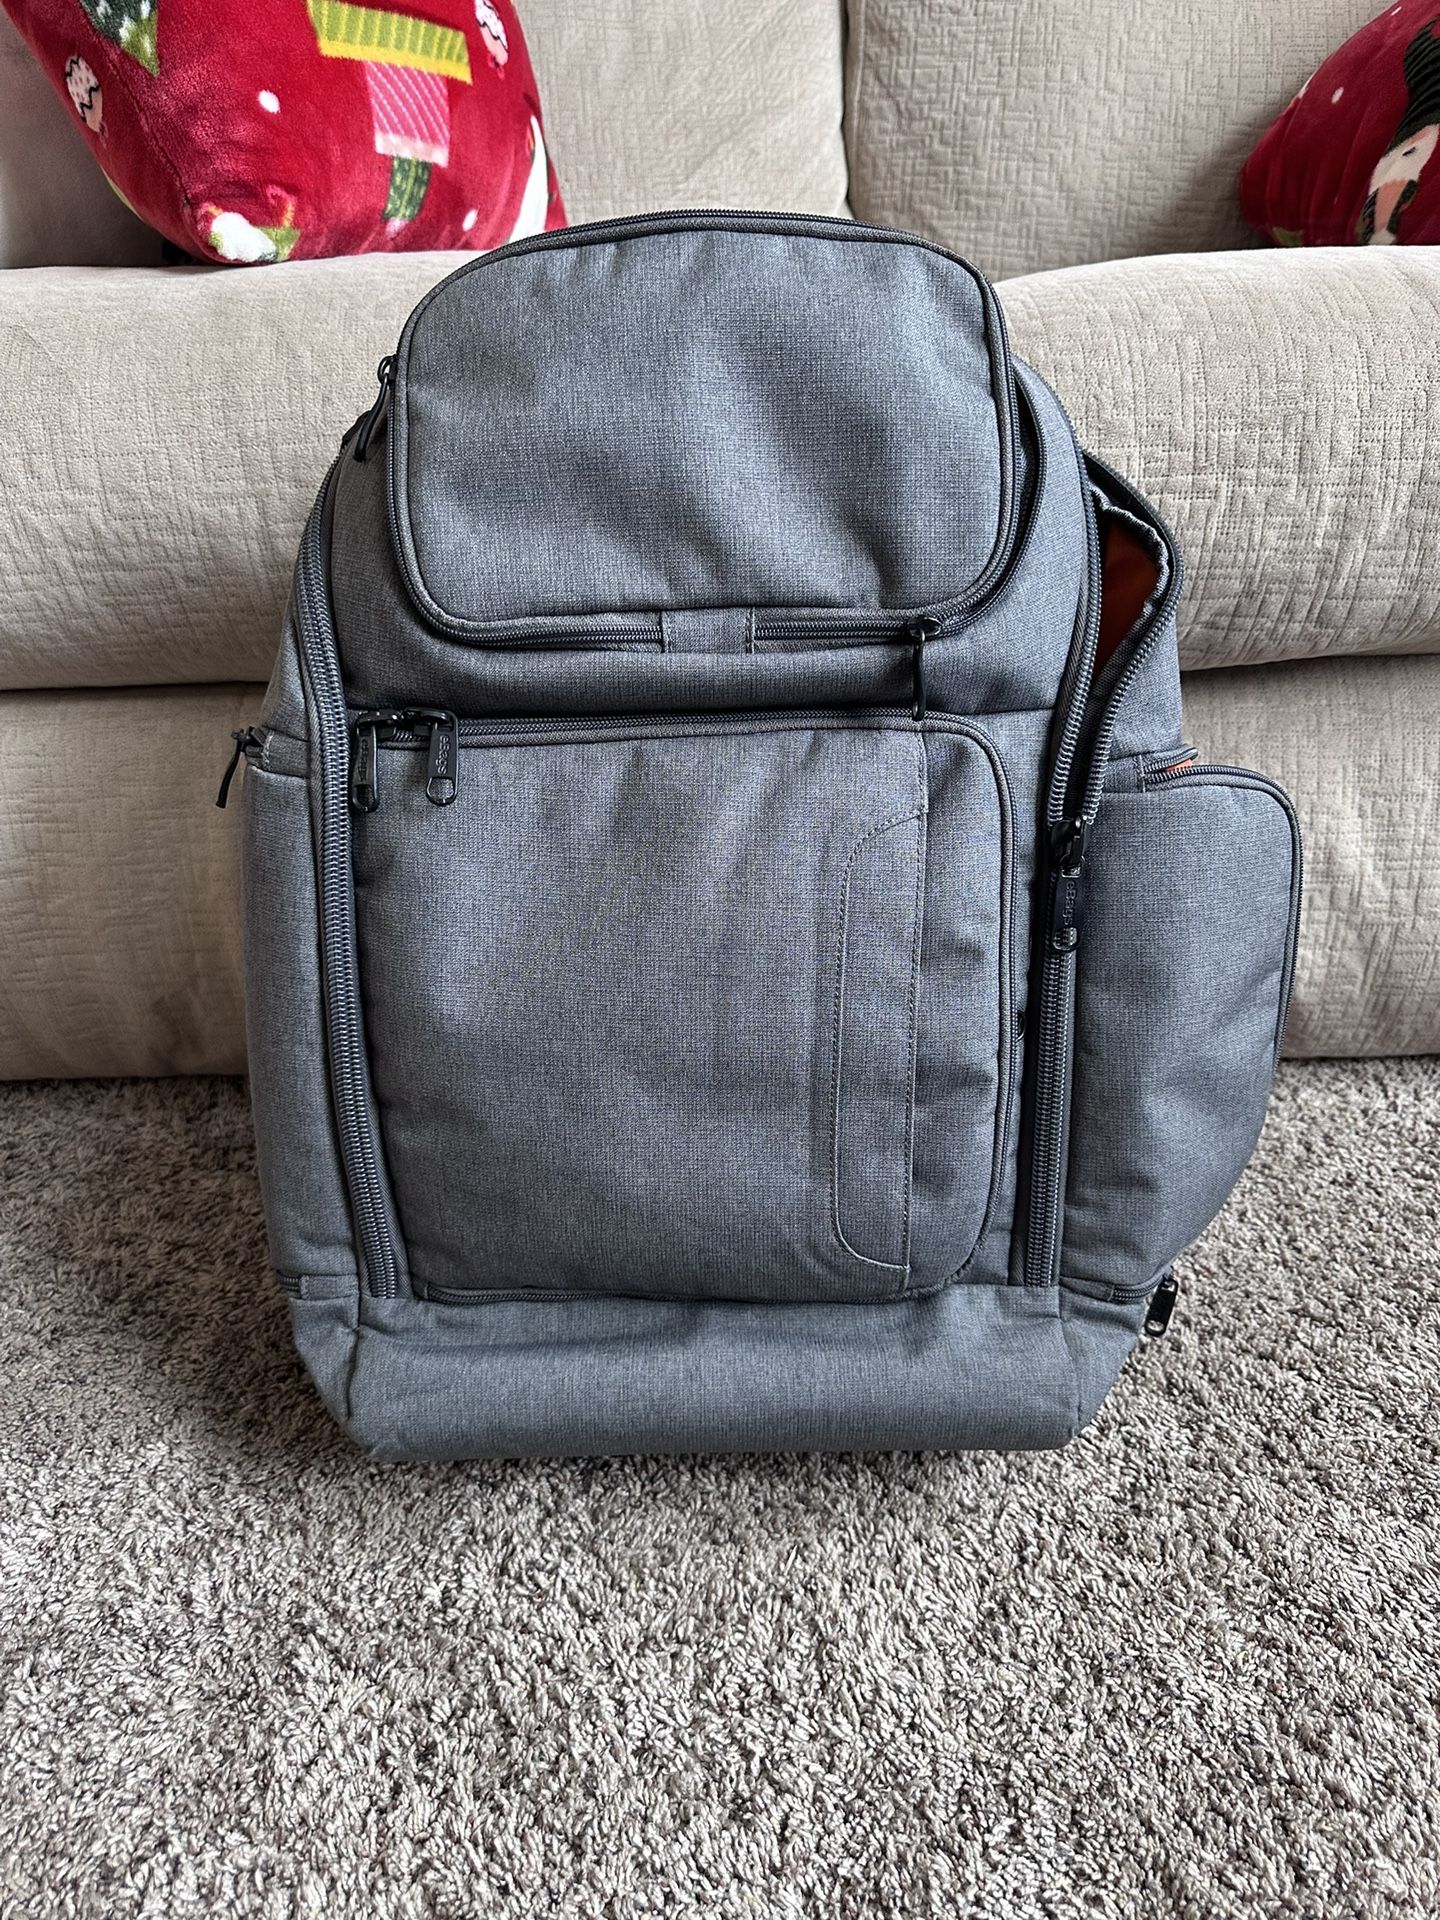 Ebags *Pro Slim Weekender Backpack/Travel/Laptop Backpack-*